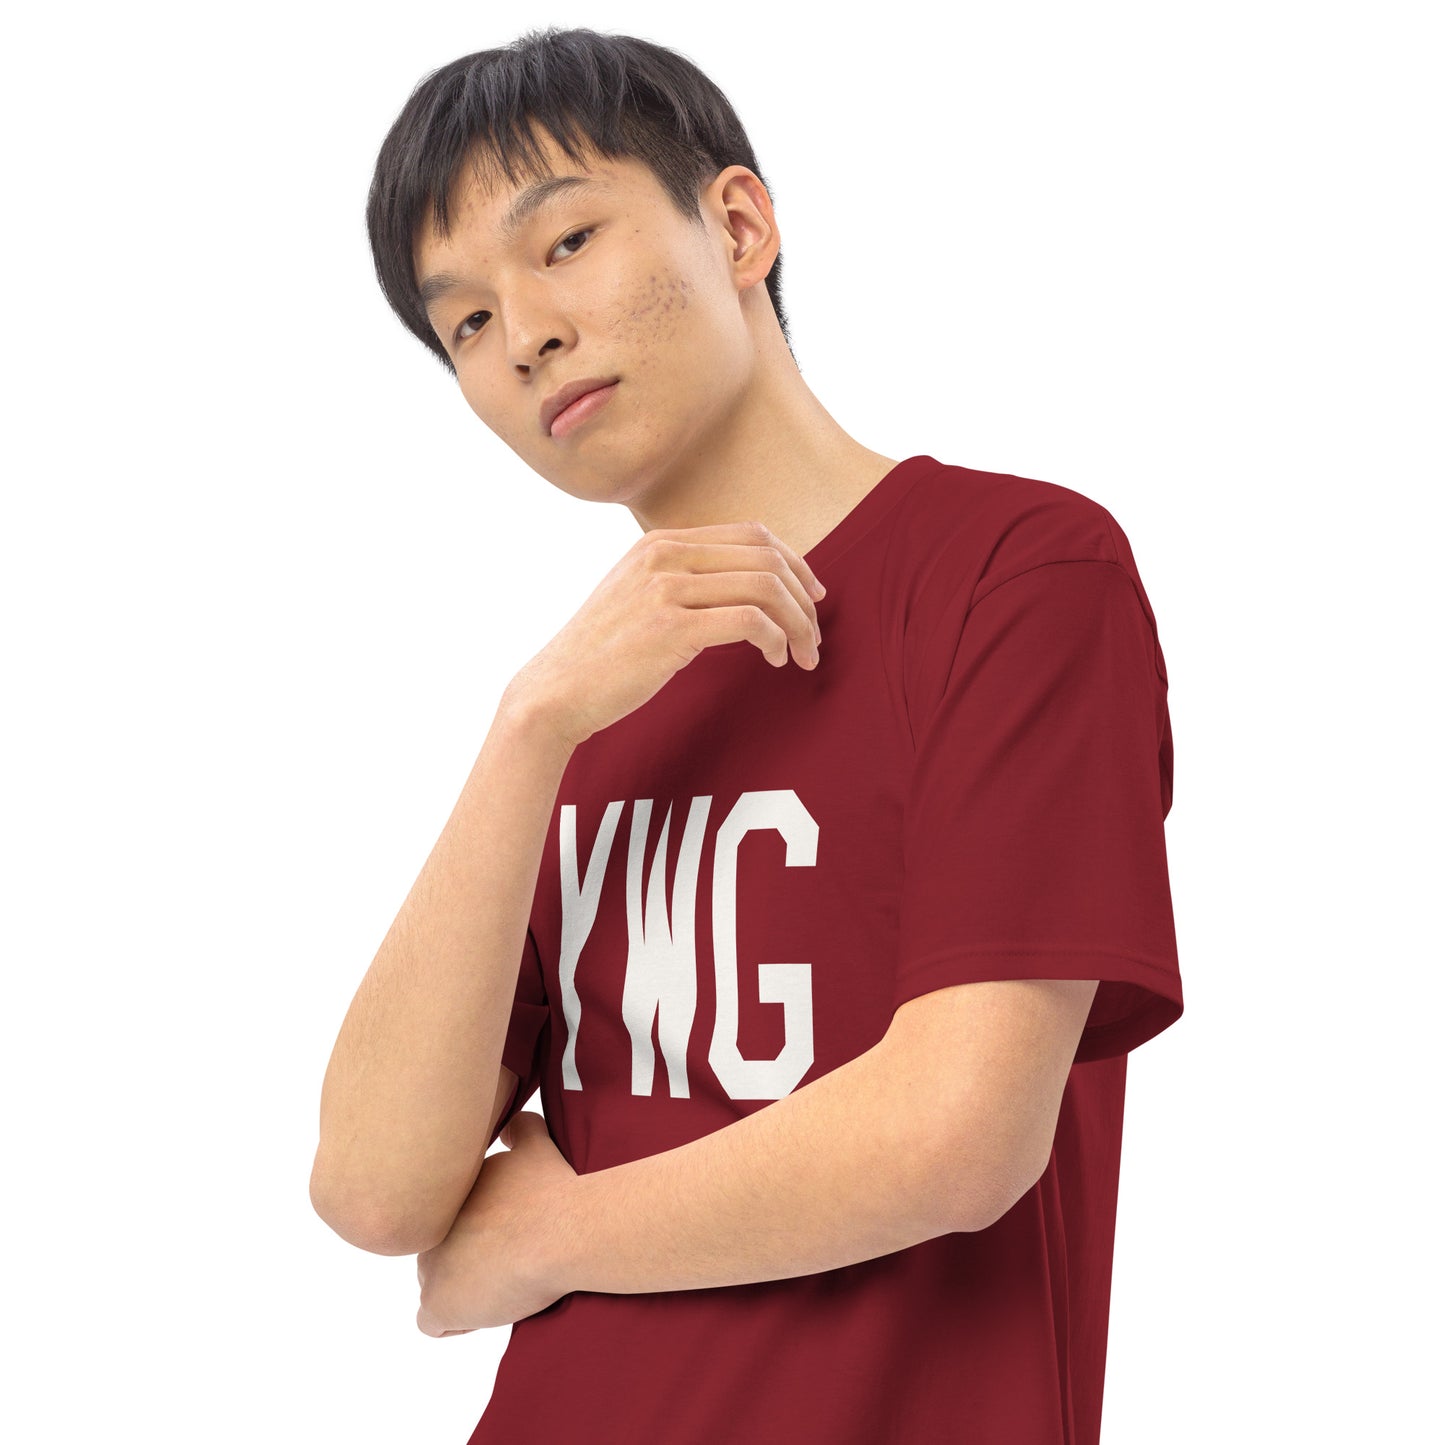 YWG Winnipeg Manitoba Men's Premium Heavyweight T-Shirt